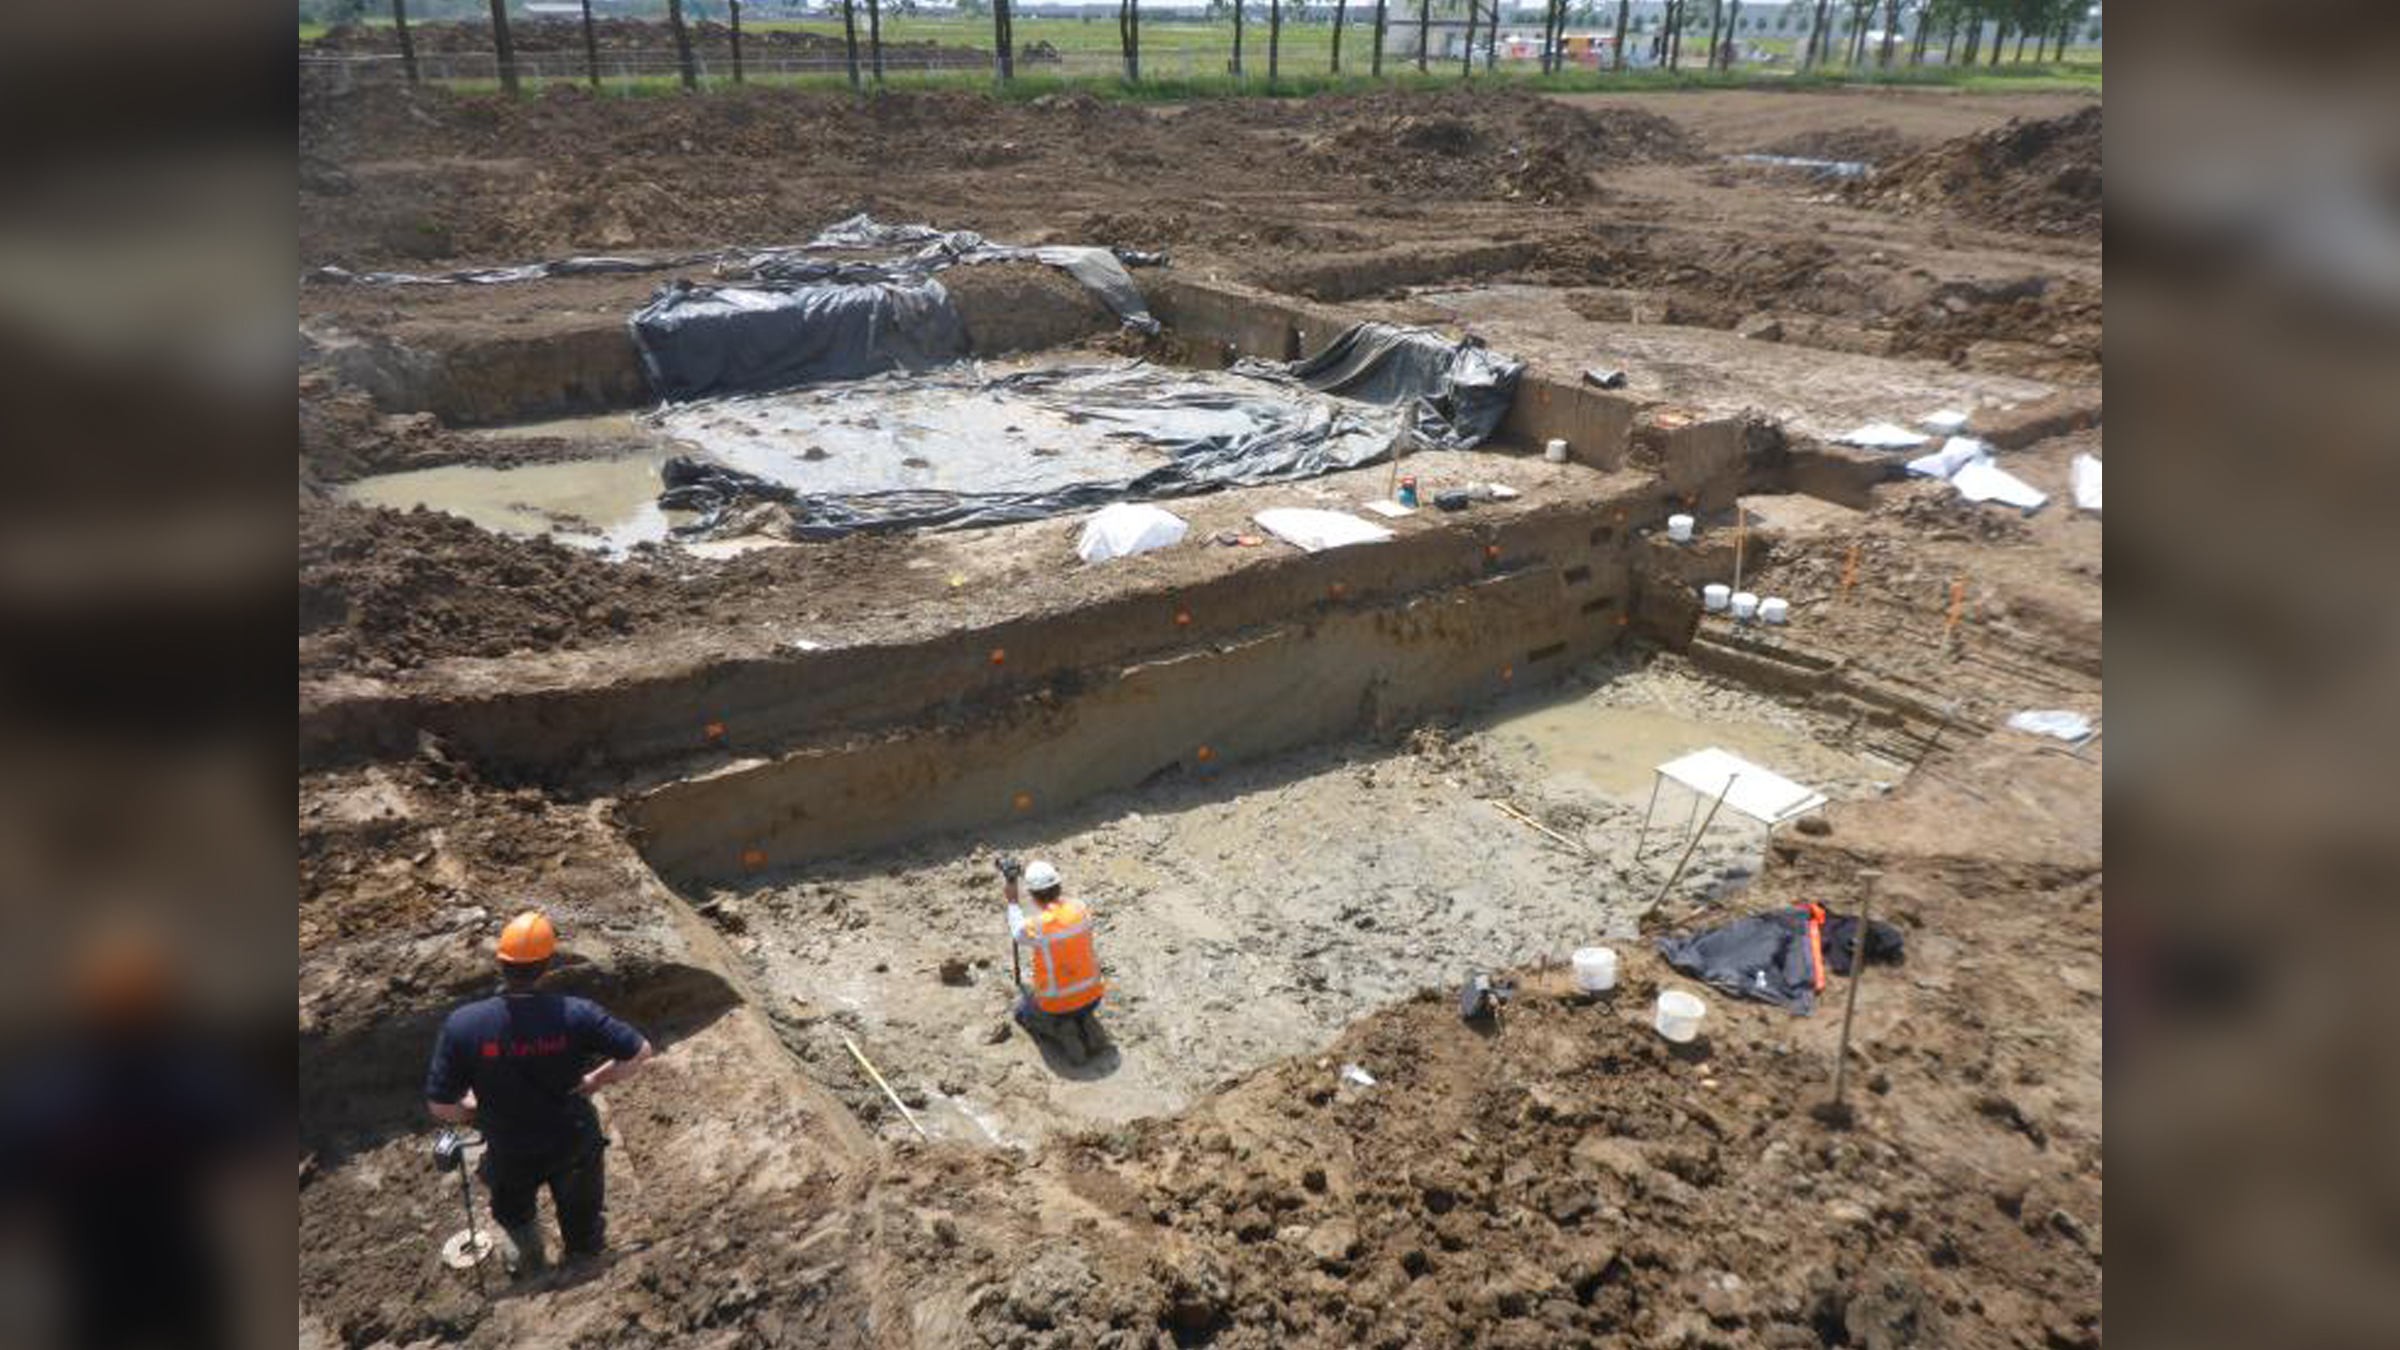 Βλέπουμε δύο αρχαιολόγους να σκάβουν ένα ορθογώνιο κομμάτι στο έδαφος.